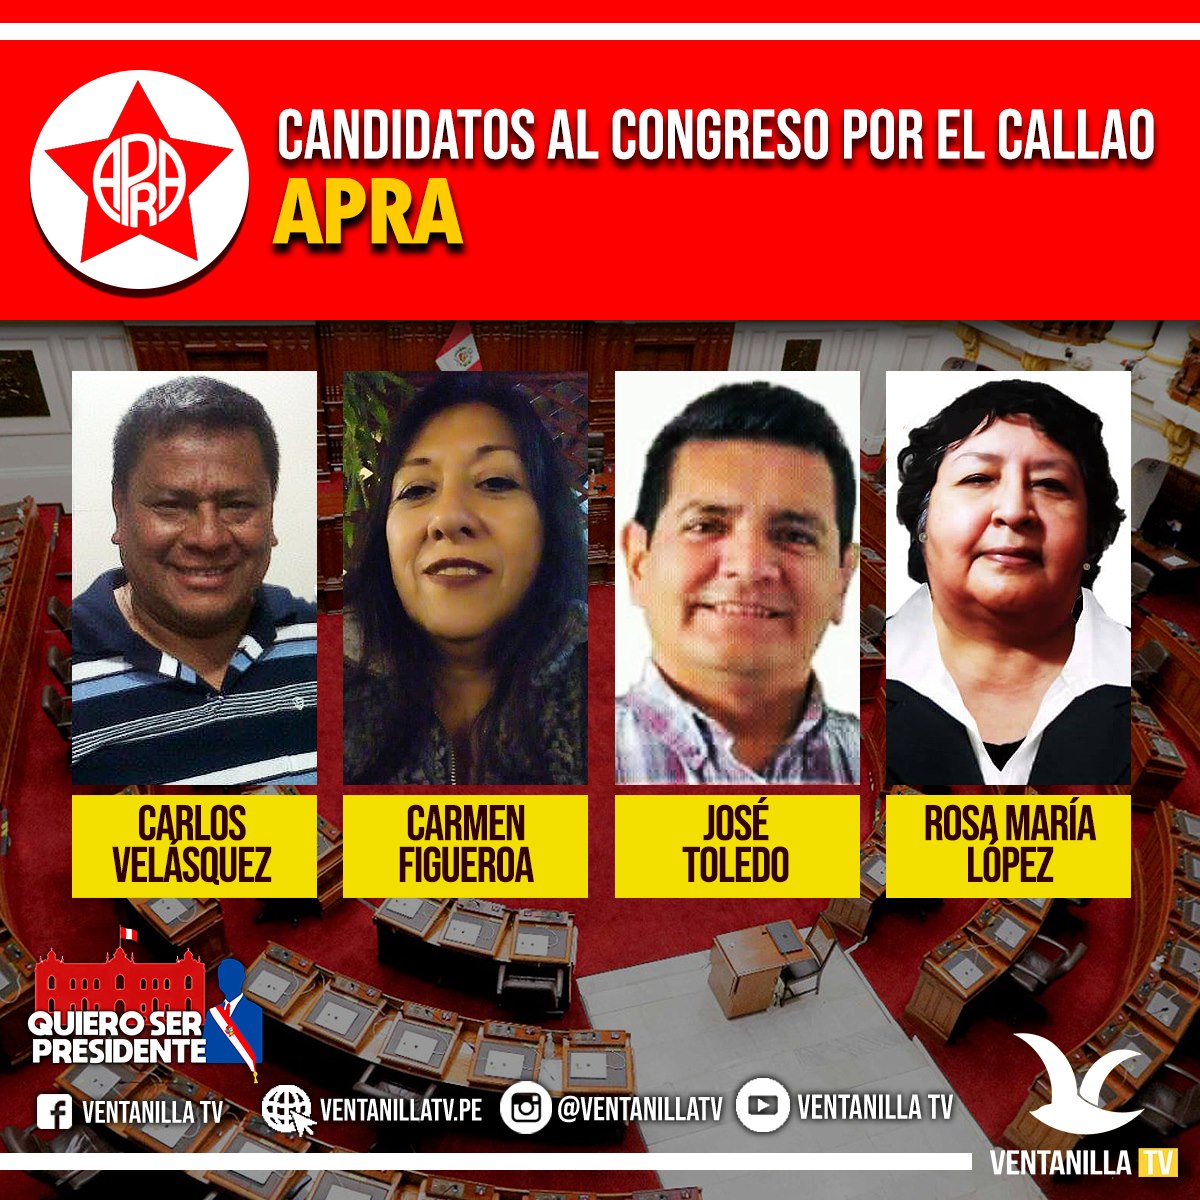 Conozca A Los Candidatos Al Congreso De La RepÚblica 2021 Ventanilla Tv 0121